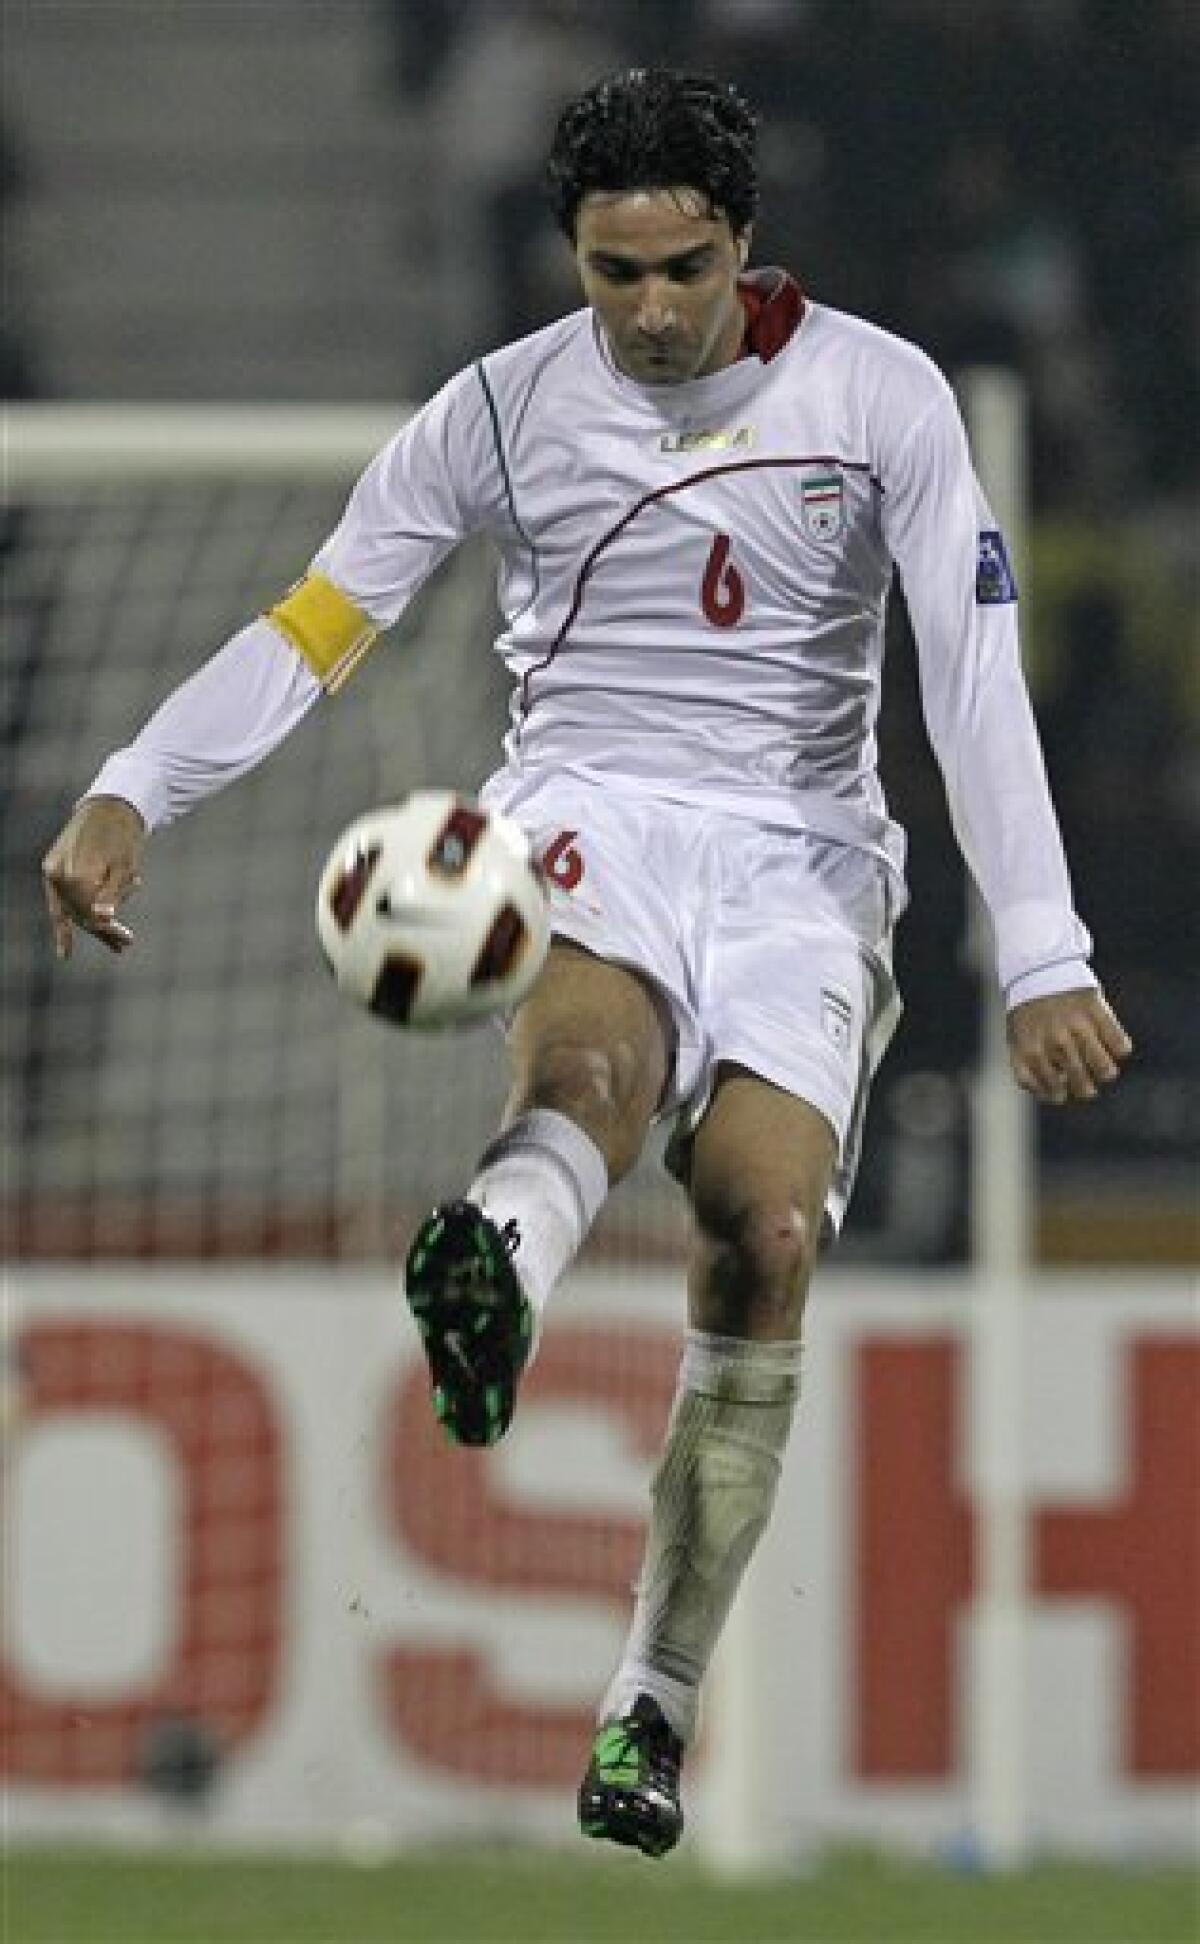 Hadi Aghili - Player profile